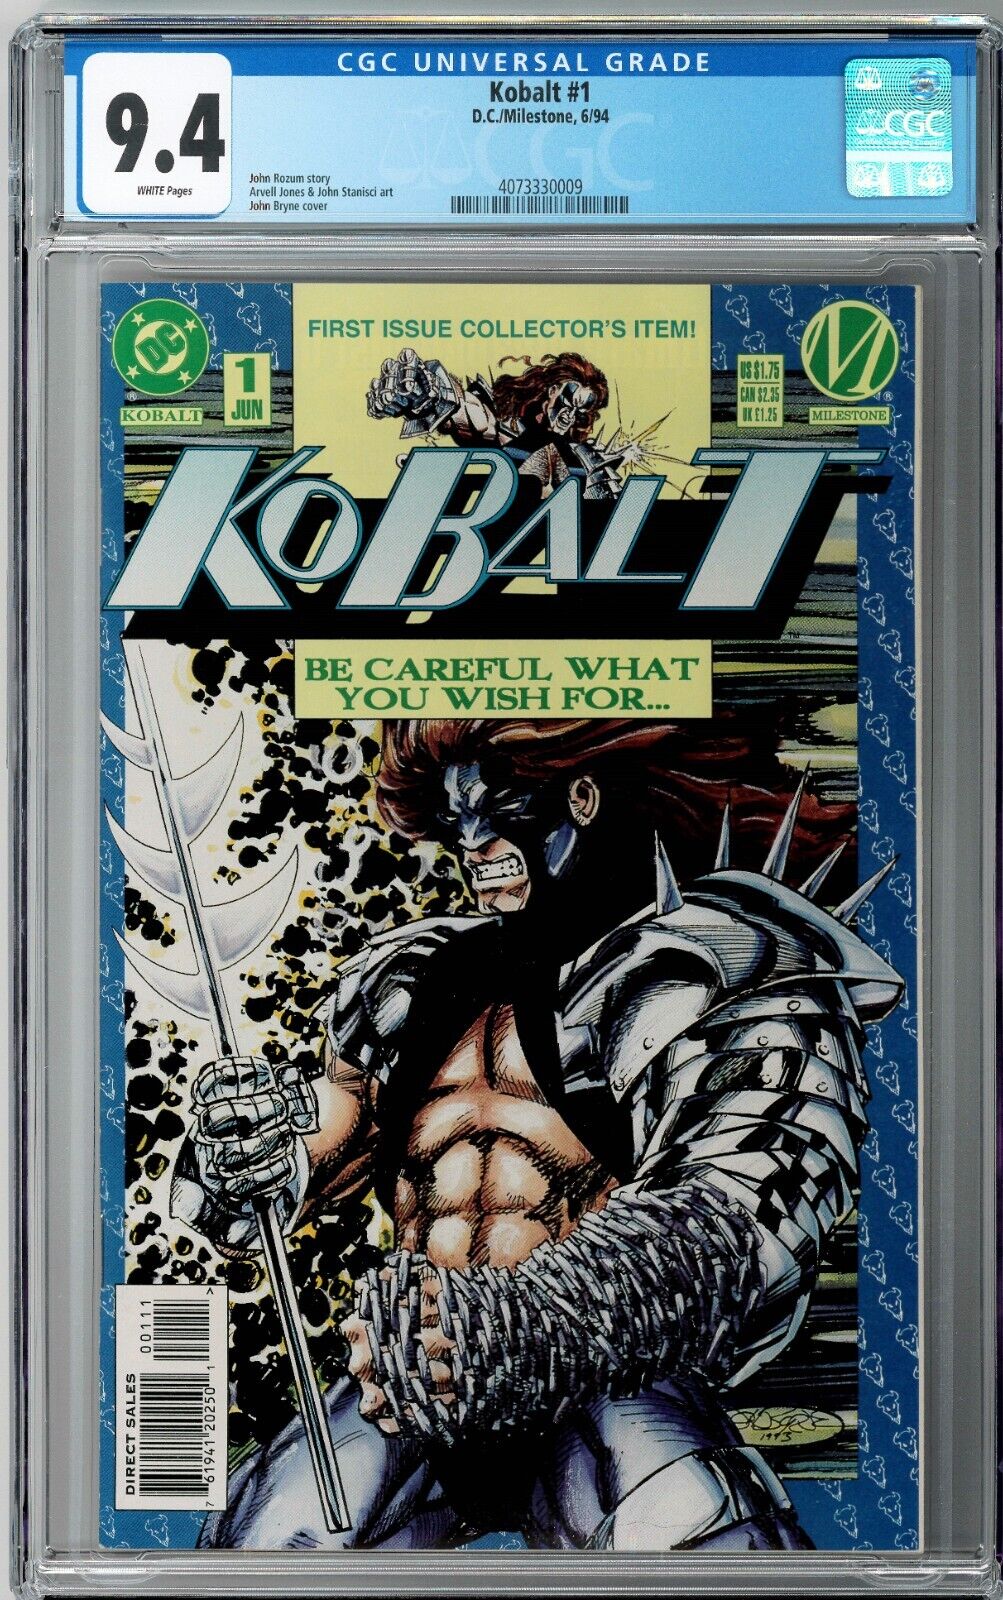 Kobalt #1 CGC 9.4 (Jun 1994, DC) John Rozum Story, John Byrne Cover, 1st Issue